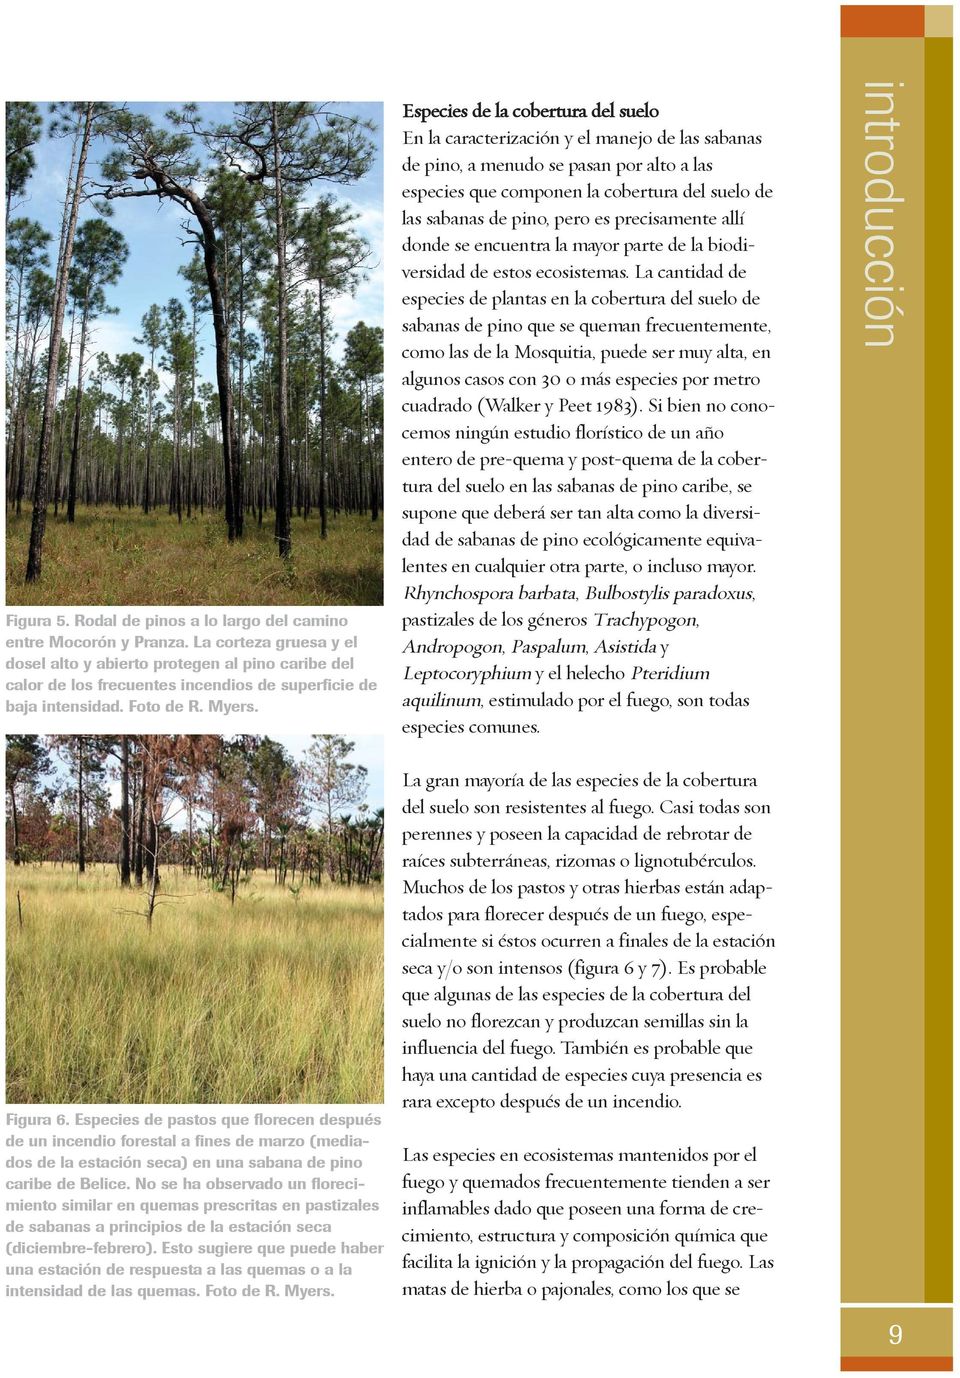 Especies de la cobertura del suelo En la caracterización y el manejo de las sabanas de pino, a menudo se pasan por alto a las especies que componen la cobertura del suelo de las sabanas de pino, pero